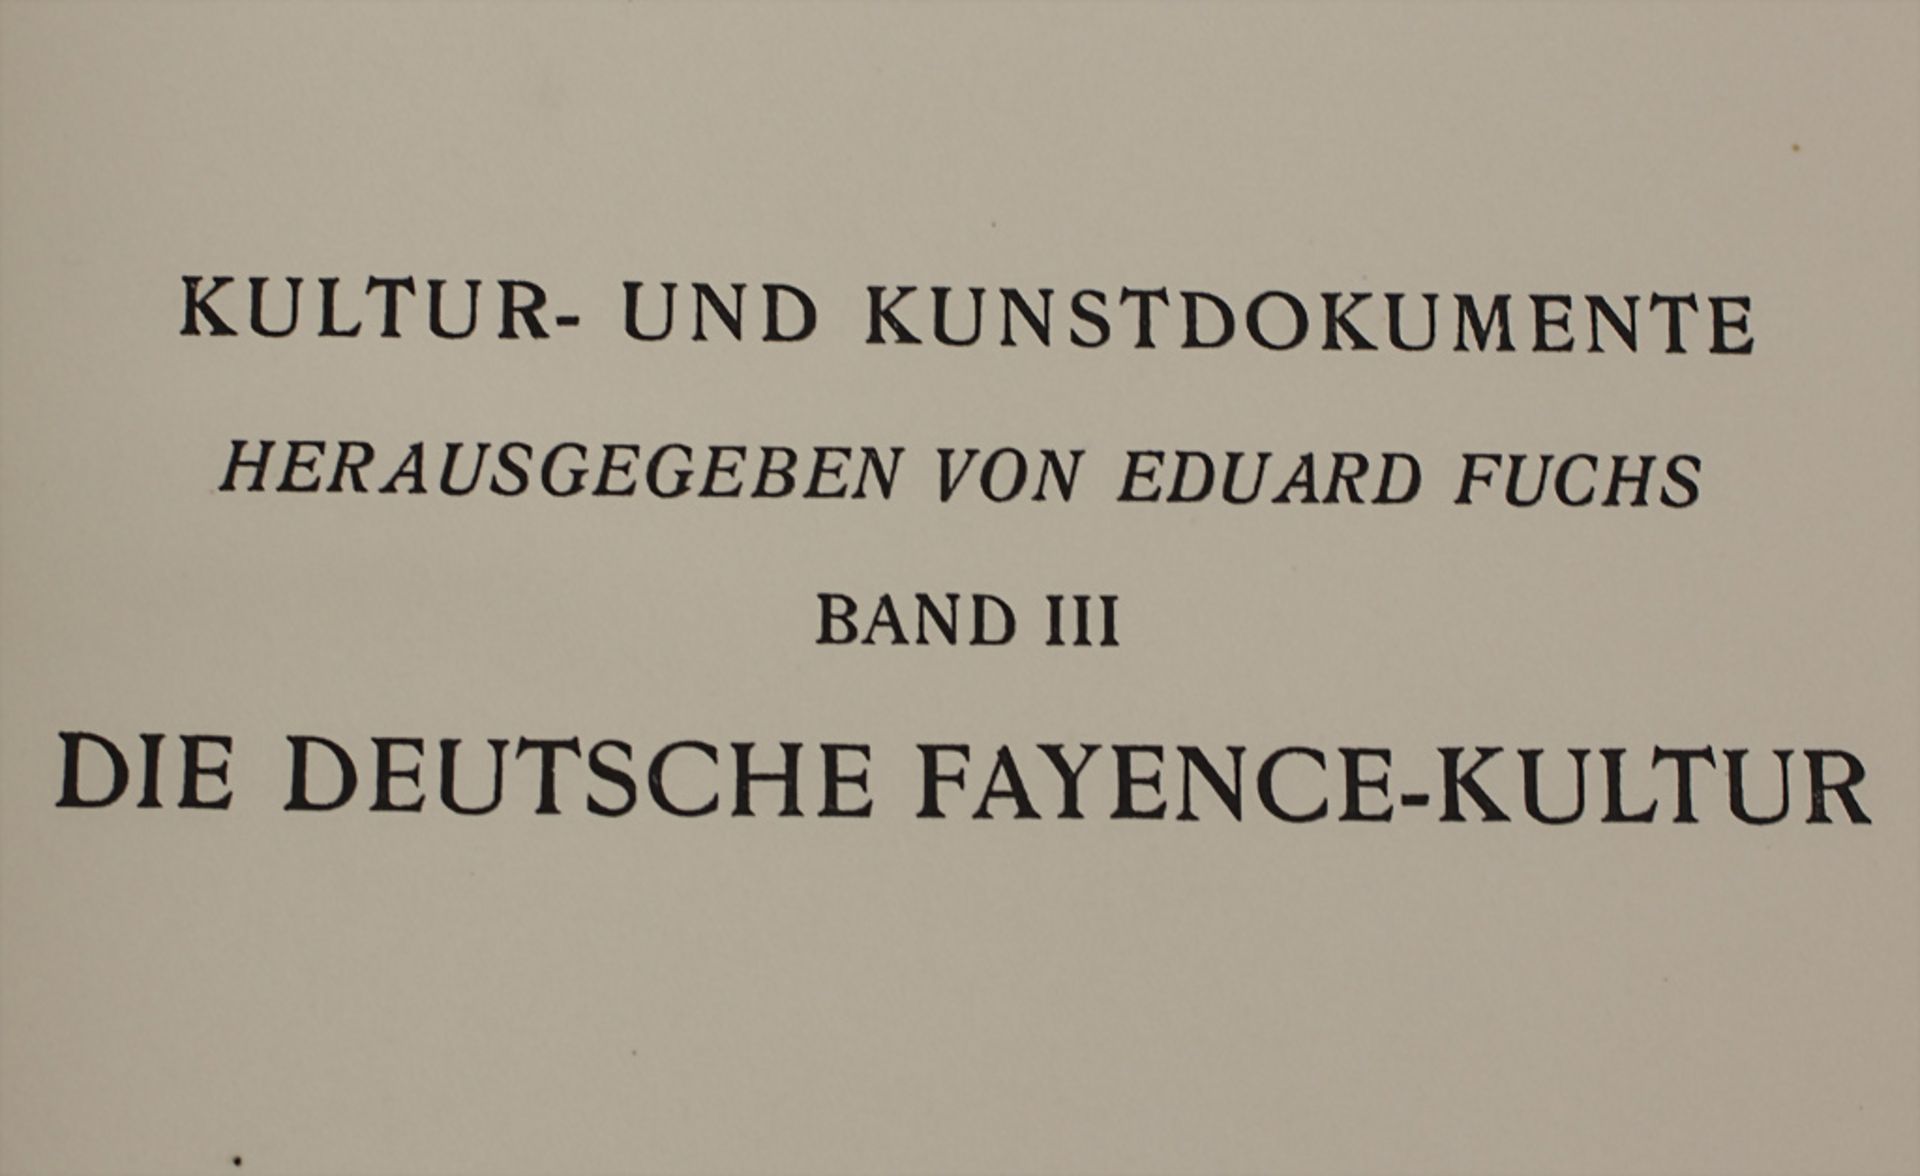 Eduard Fuchs, Paul Heiland: 'Die deutsche Fayence-Kultur', Band 3 München, 1925